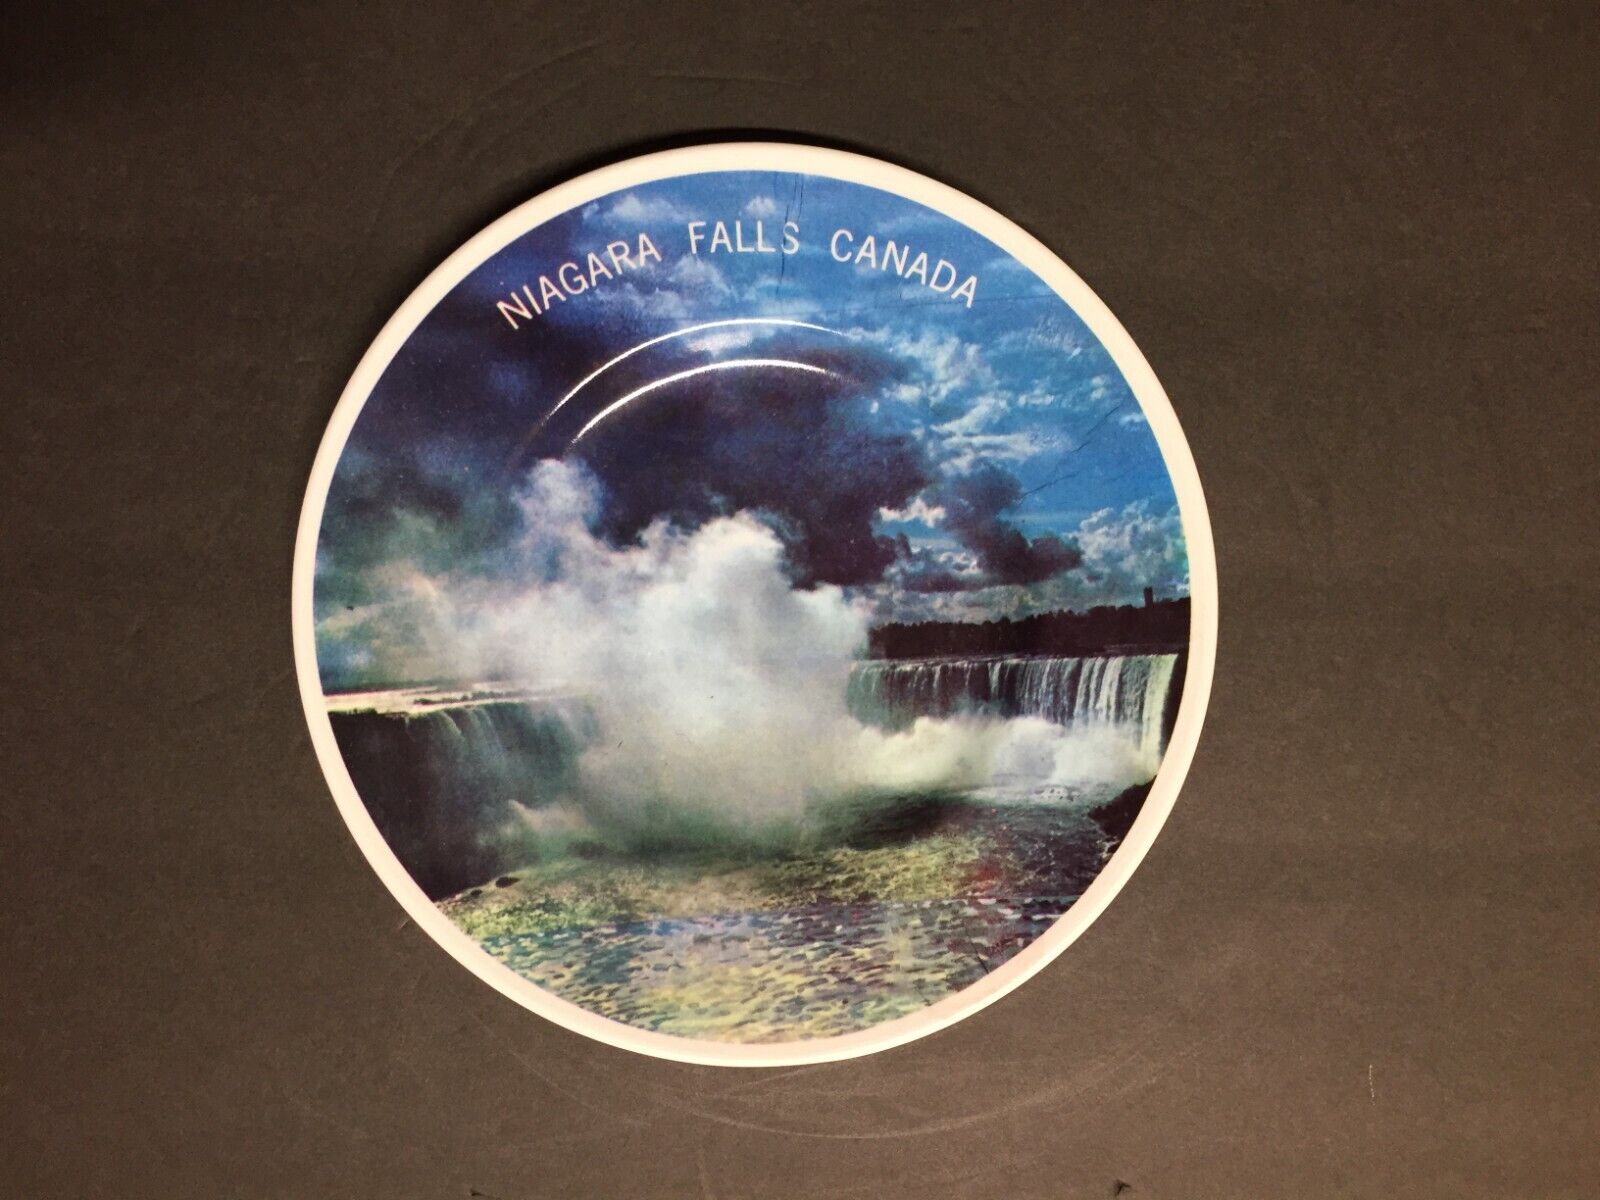 Vintage Niagara Falls Canada Travel Souvenir Collectible Plate Plastic